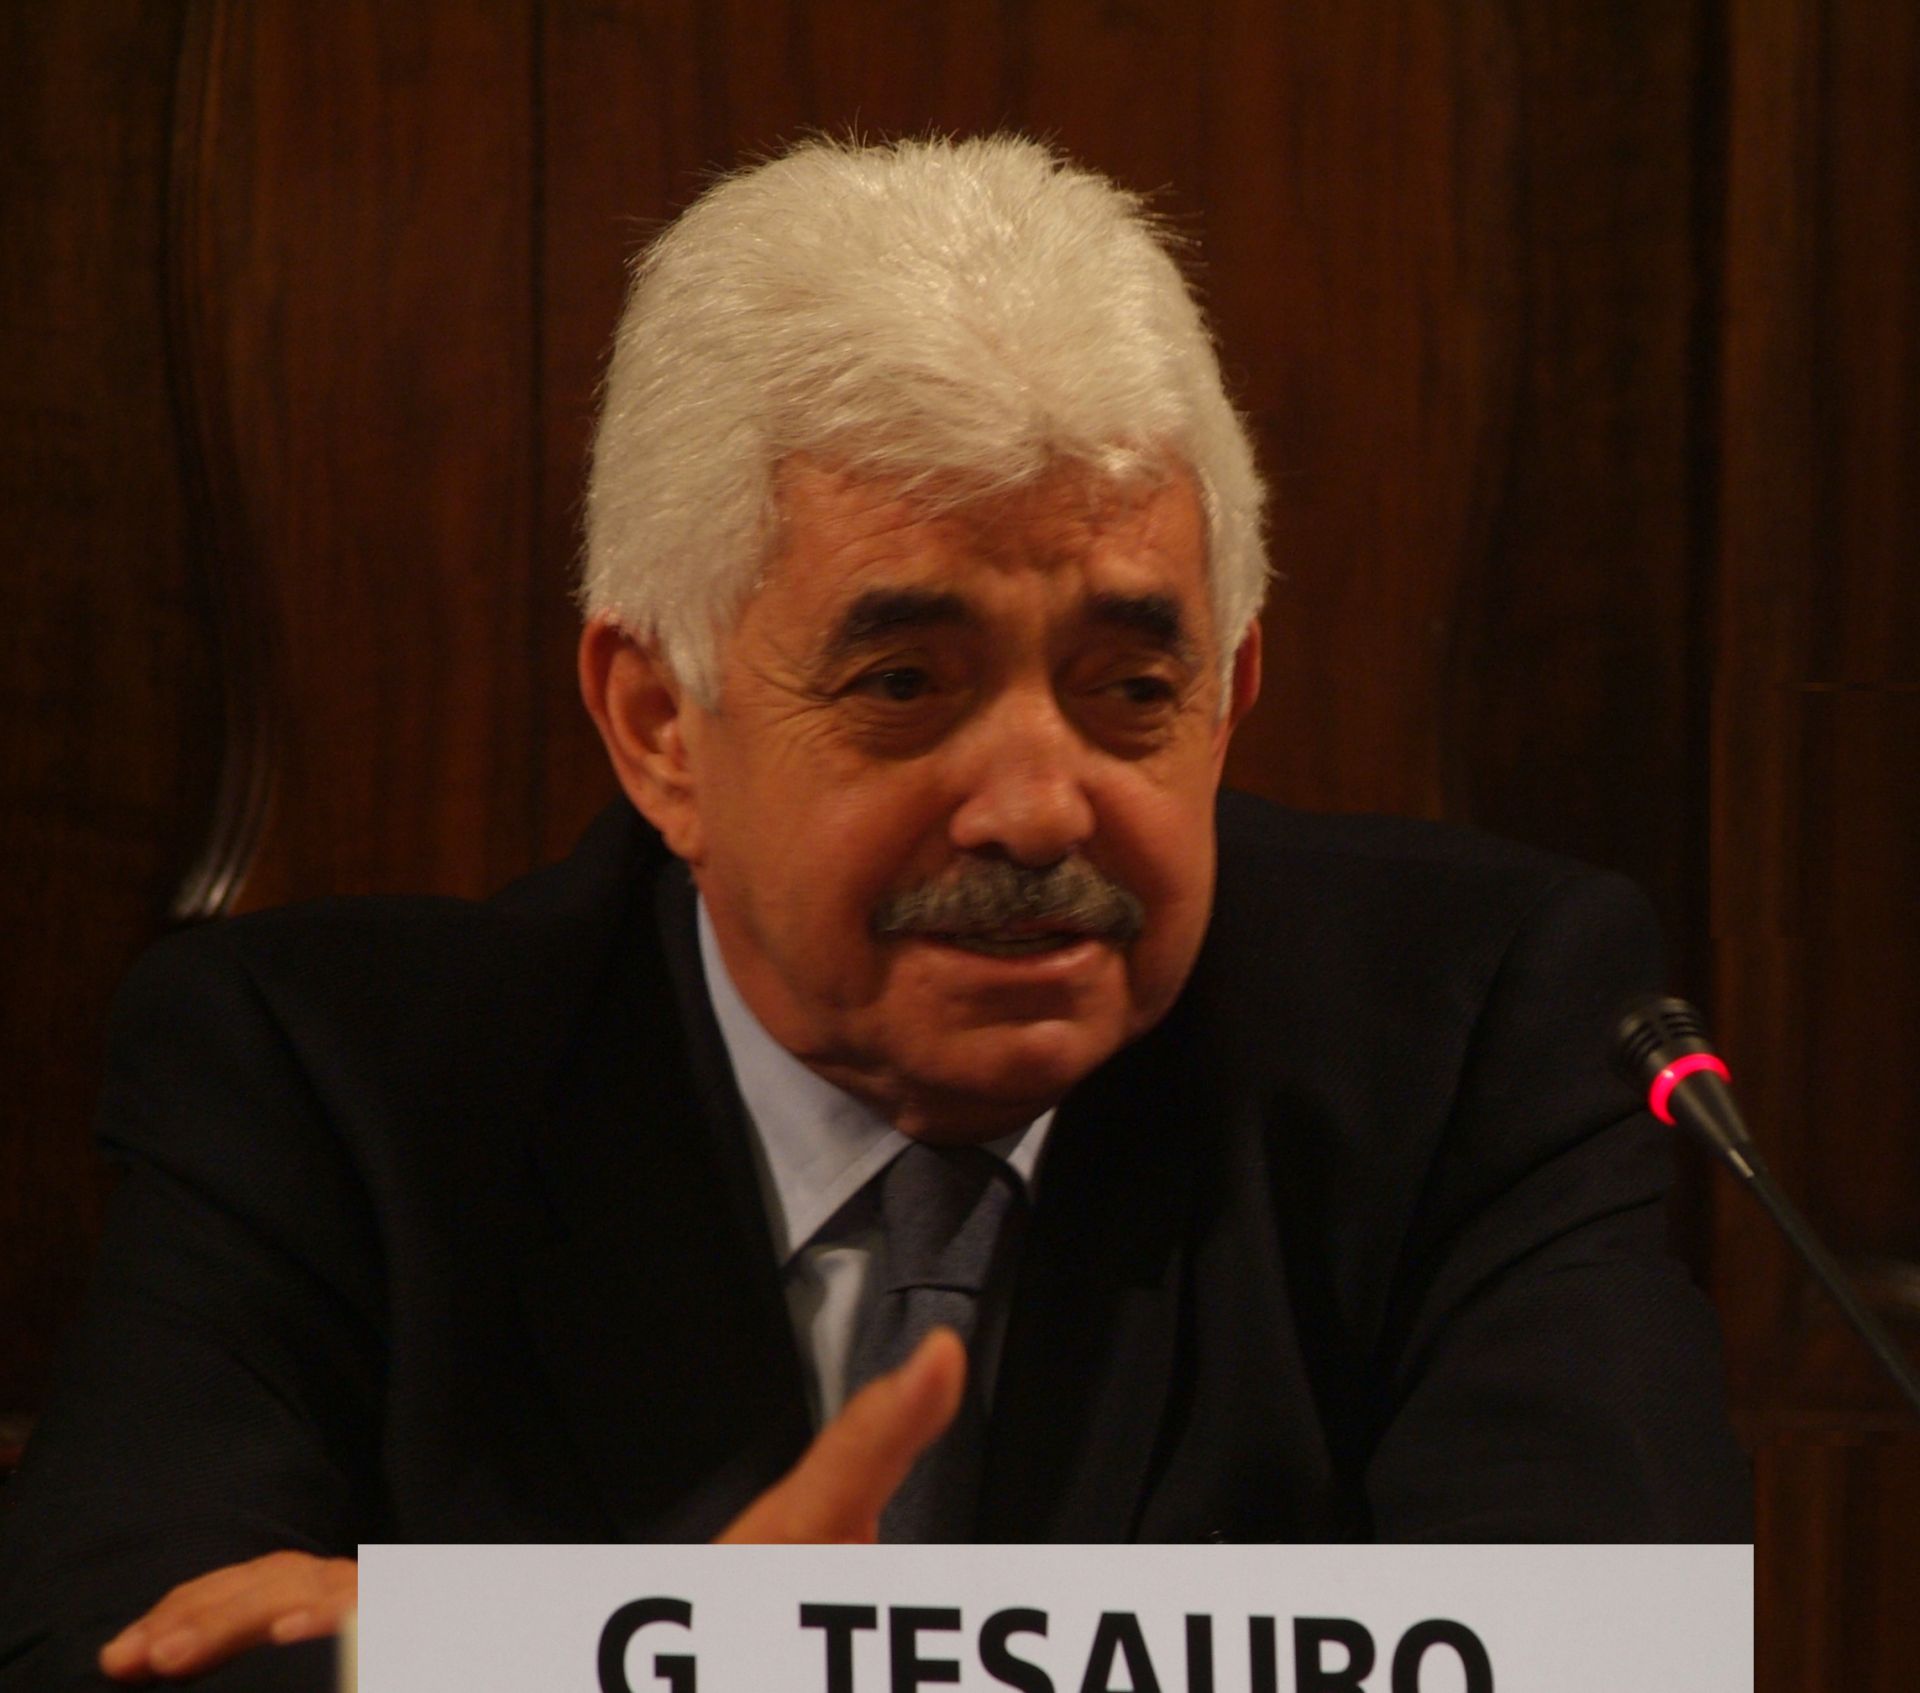 Giuseppe Tesauro